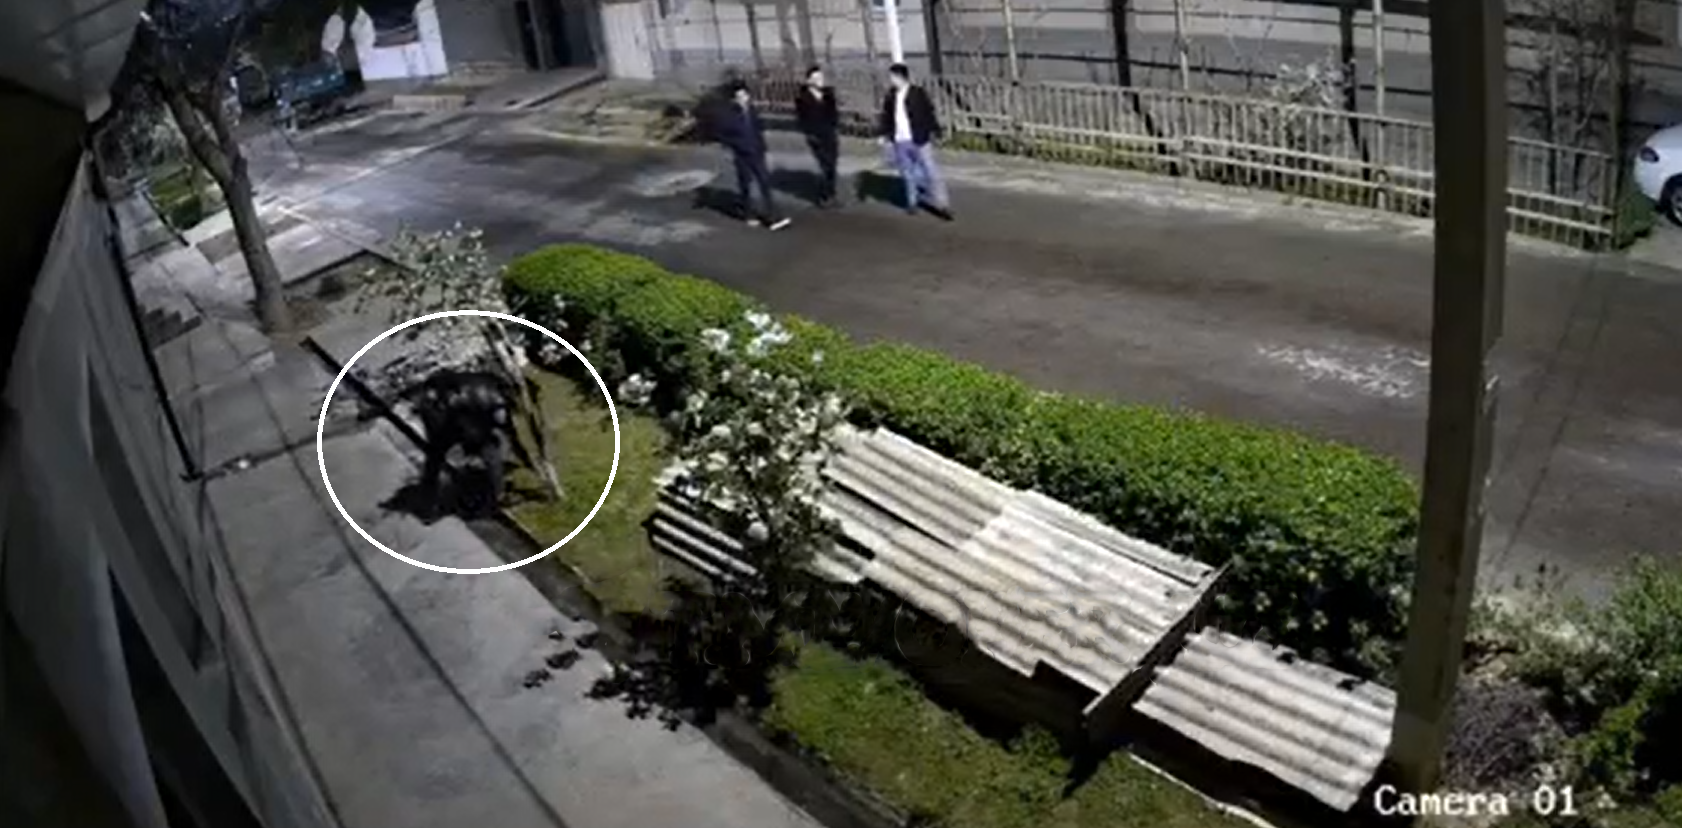 В Ташкенте на камеру видеонаблюдения у одного из домов попали 28 человек, искавших «закладки» — видео